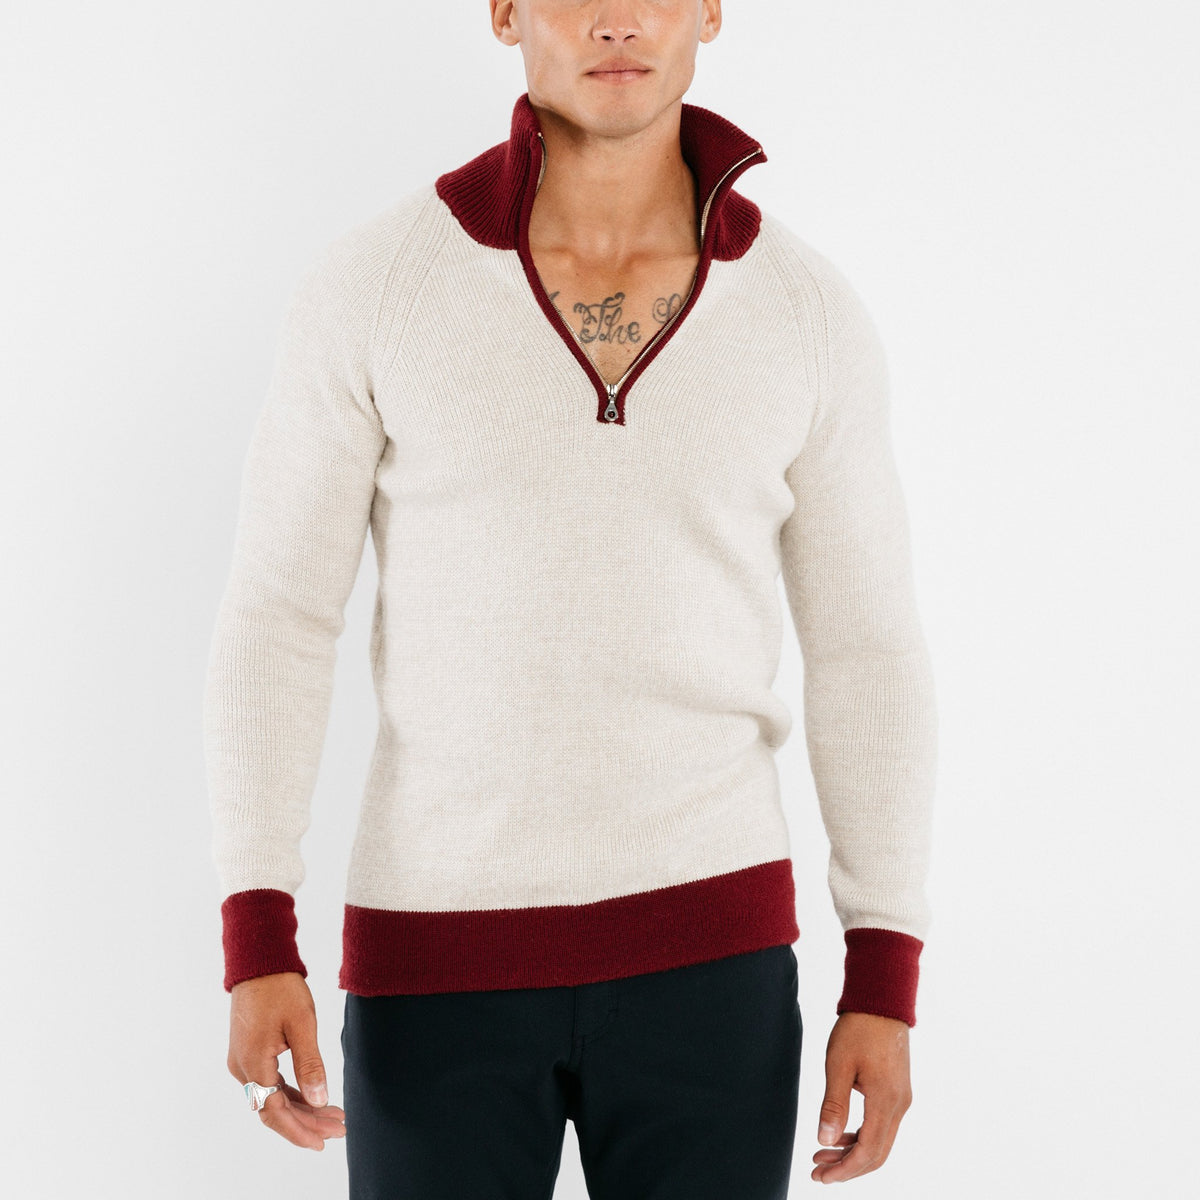 1/4-Zip 3-Ply Sweater - Oatmeal / Dark Red knitwear Commonwealth Proper